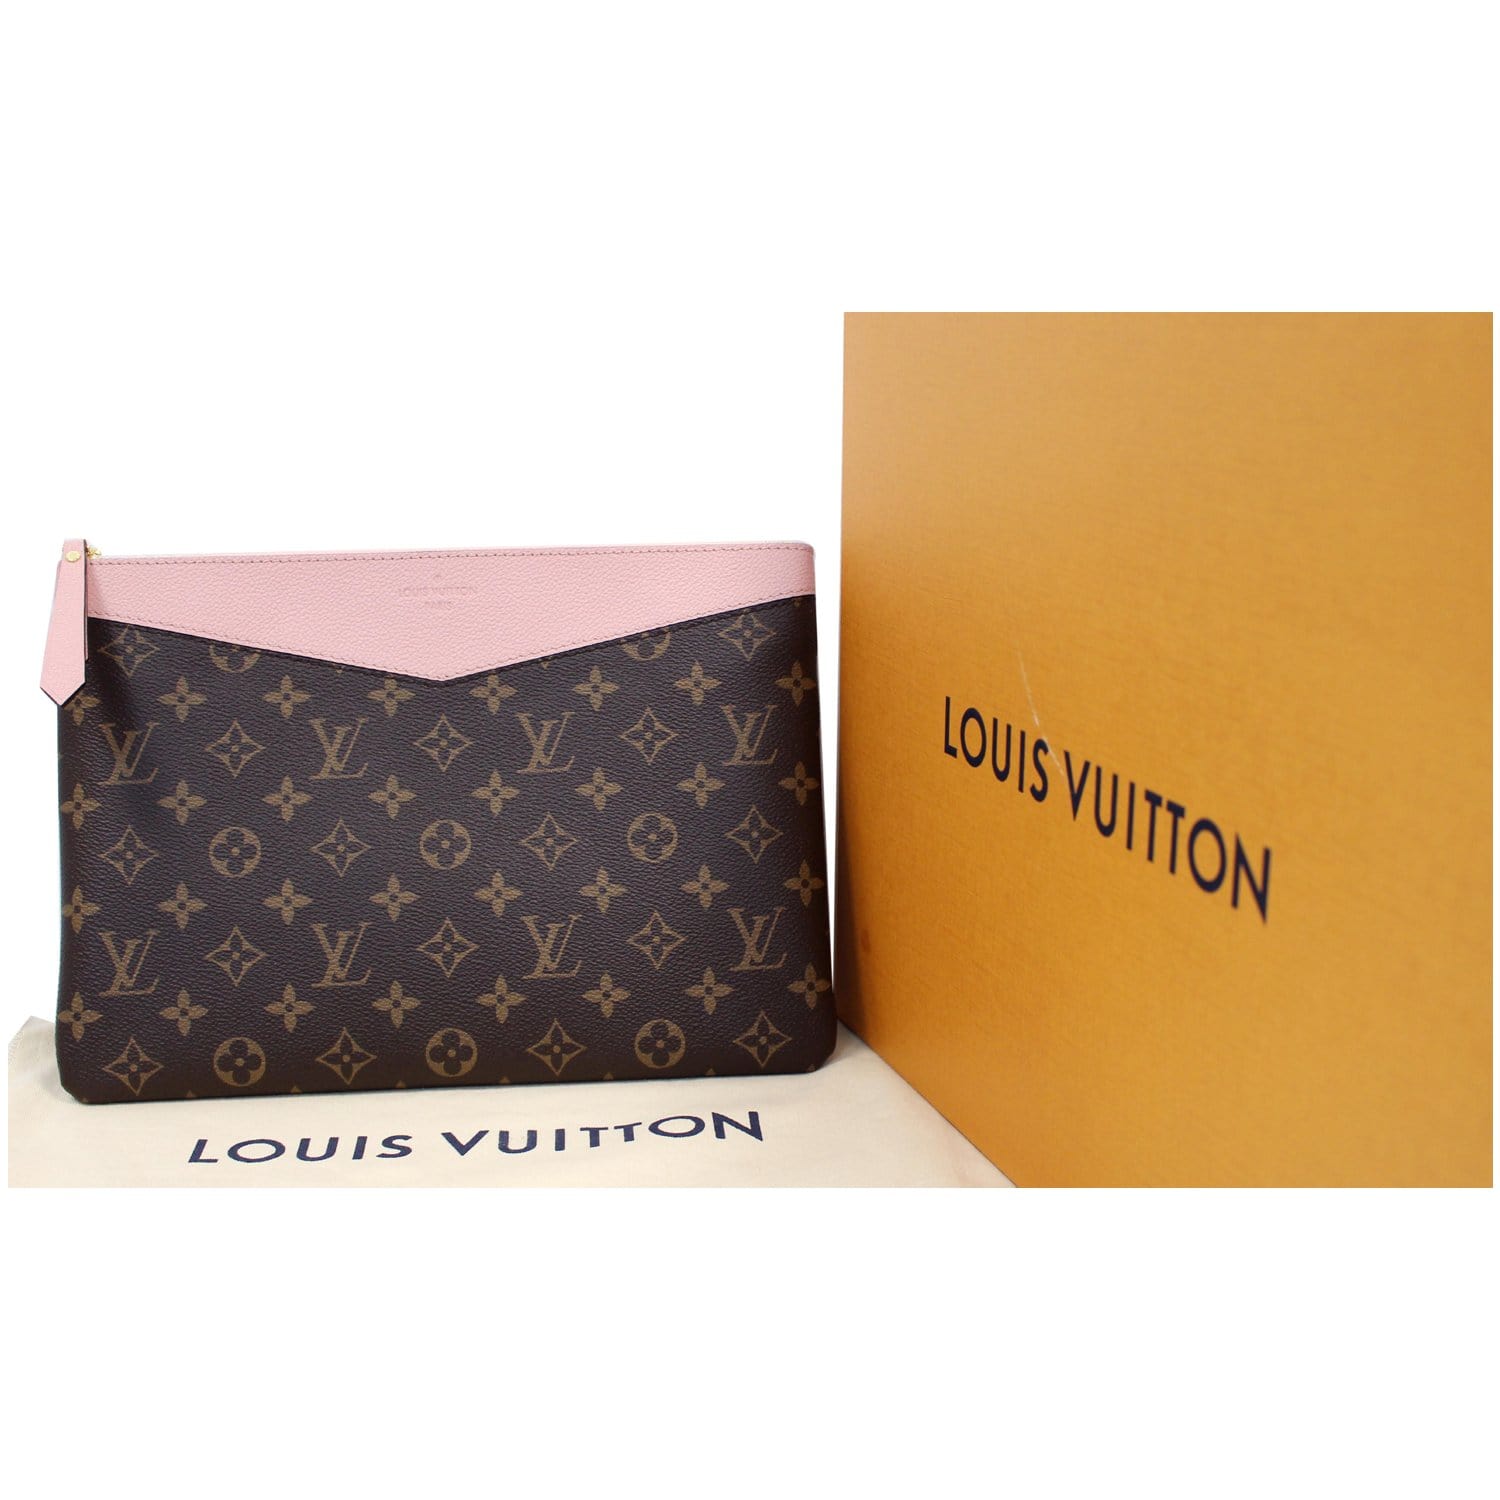 Louis Vuitton Damier Azur Pink Daily Pouch Zip Porfolio Clutch 8lu0224